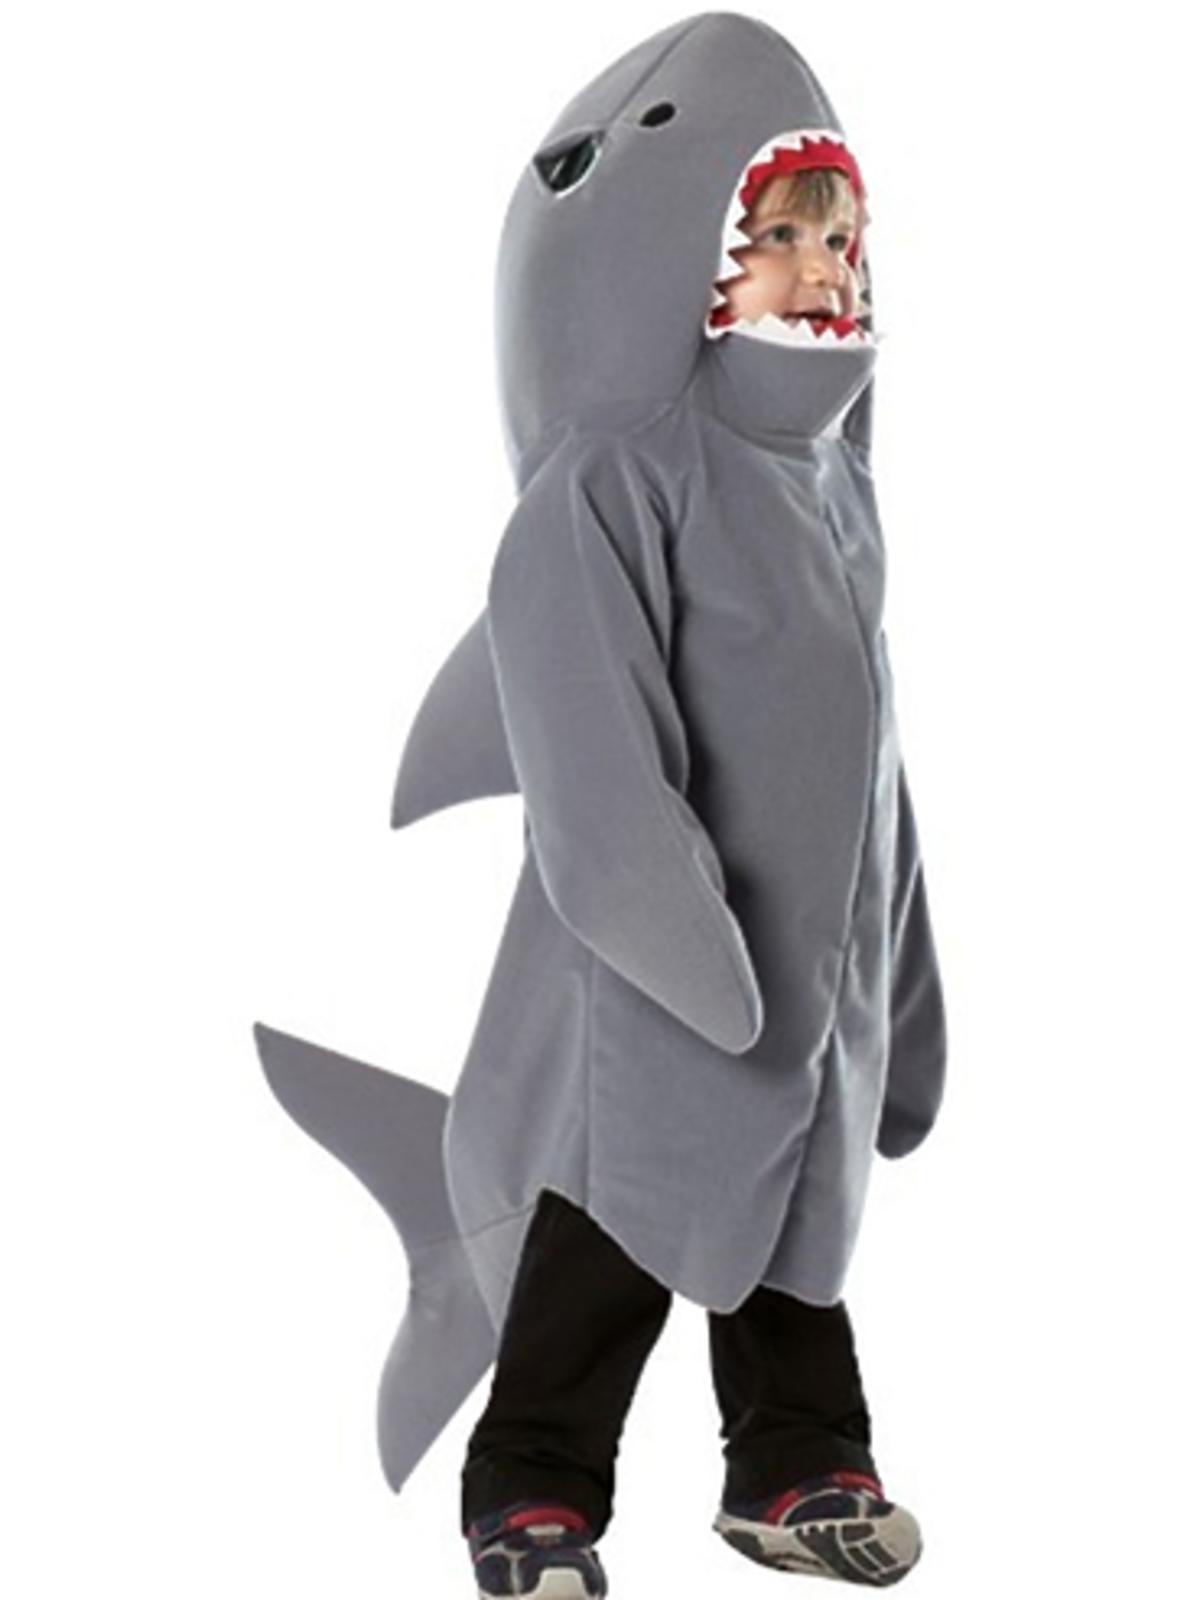 kostium-dziki-rekin-dla-dzieci-147-99zl-funidelia.jpg